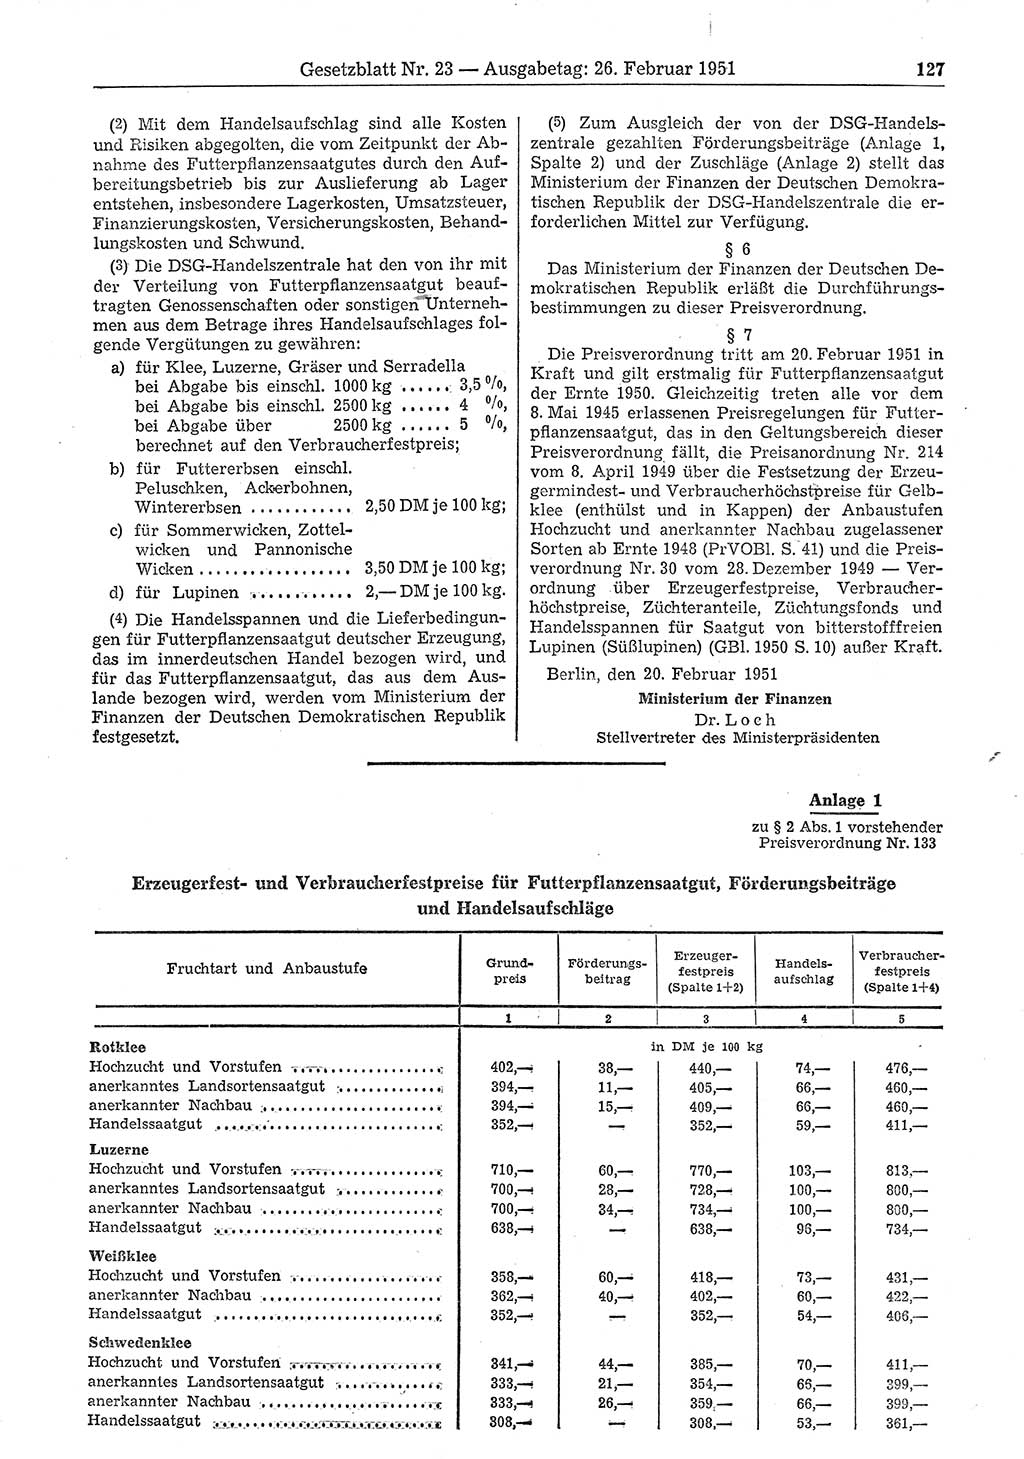 Gesetzblatt (GBl.) der Deutschen Demokratischen Republik (DDR) 1951, Seite 127 (GBl. DDR 1951, S. 127)